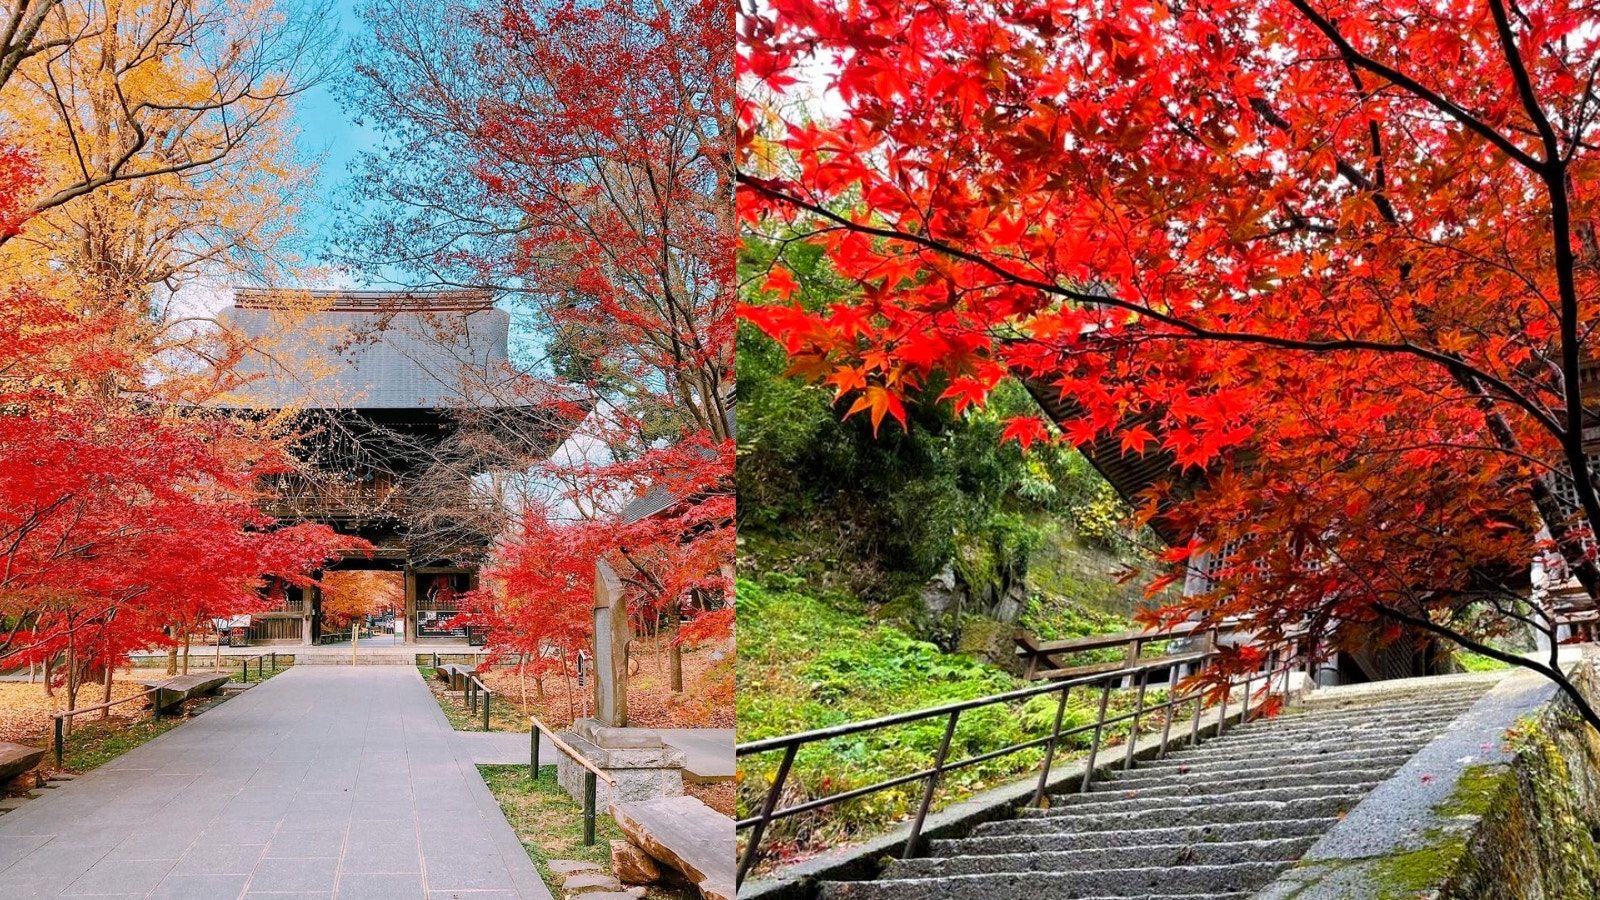 日本紅葉22 關東關西北陸九州楓葉變色日期預測賞楓景點推薦